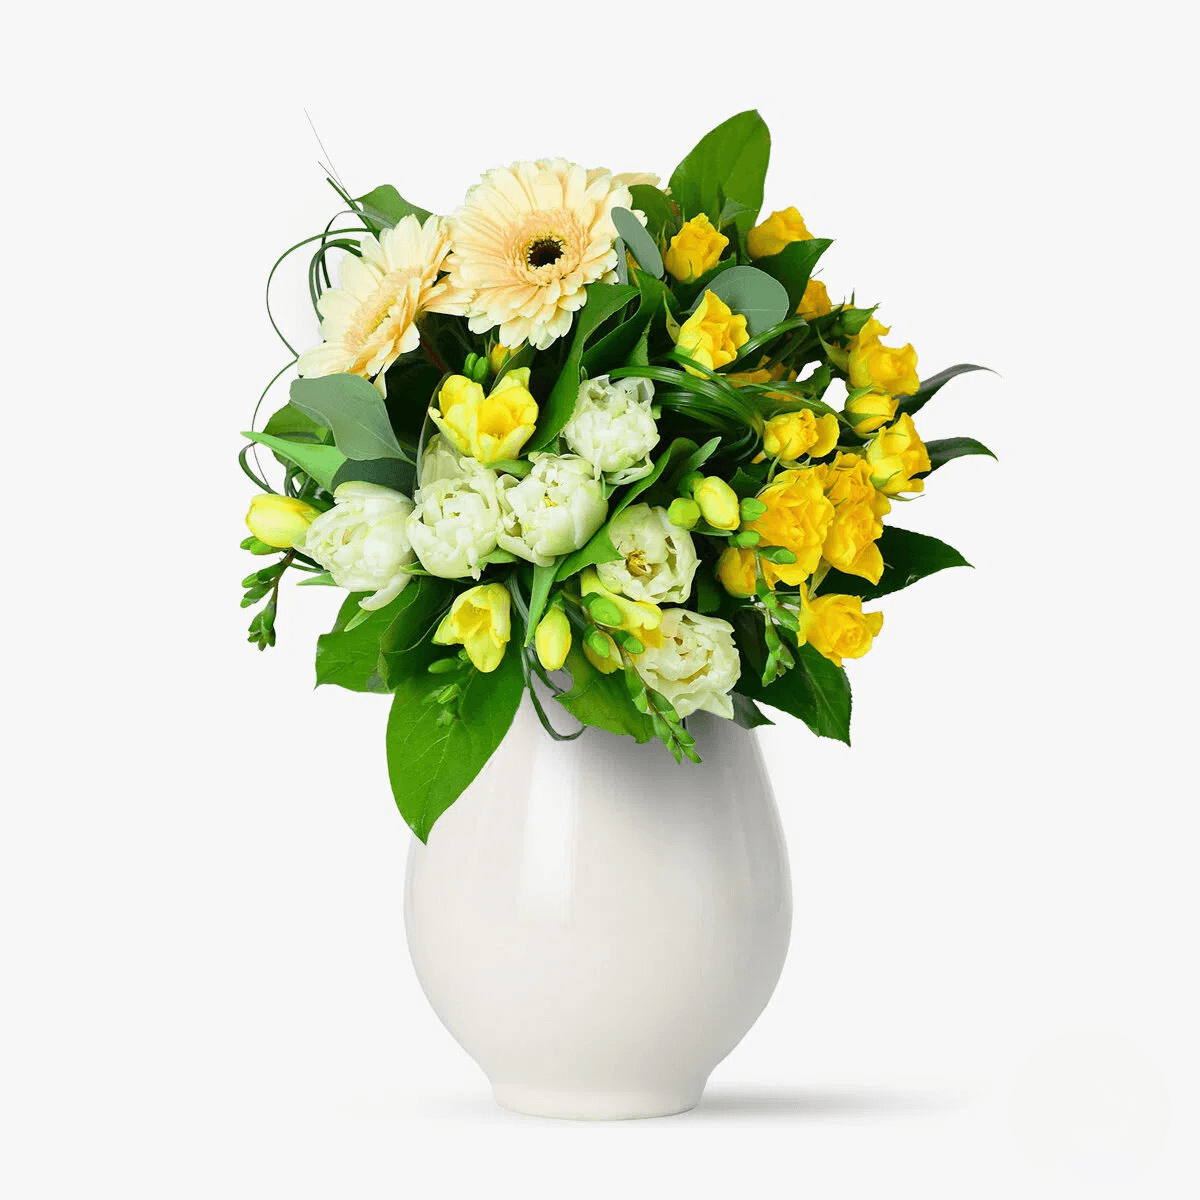 Flori si soare – Standard Flori imagine 2022